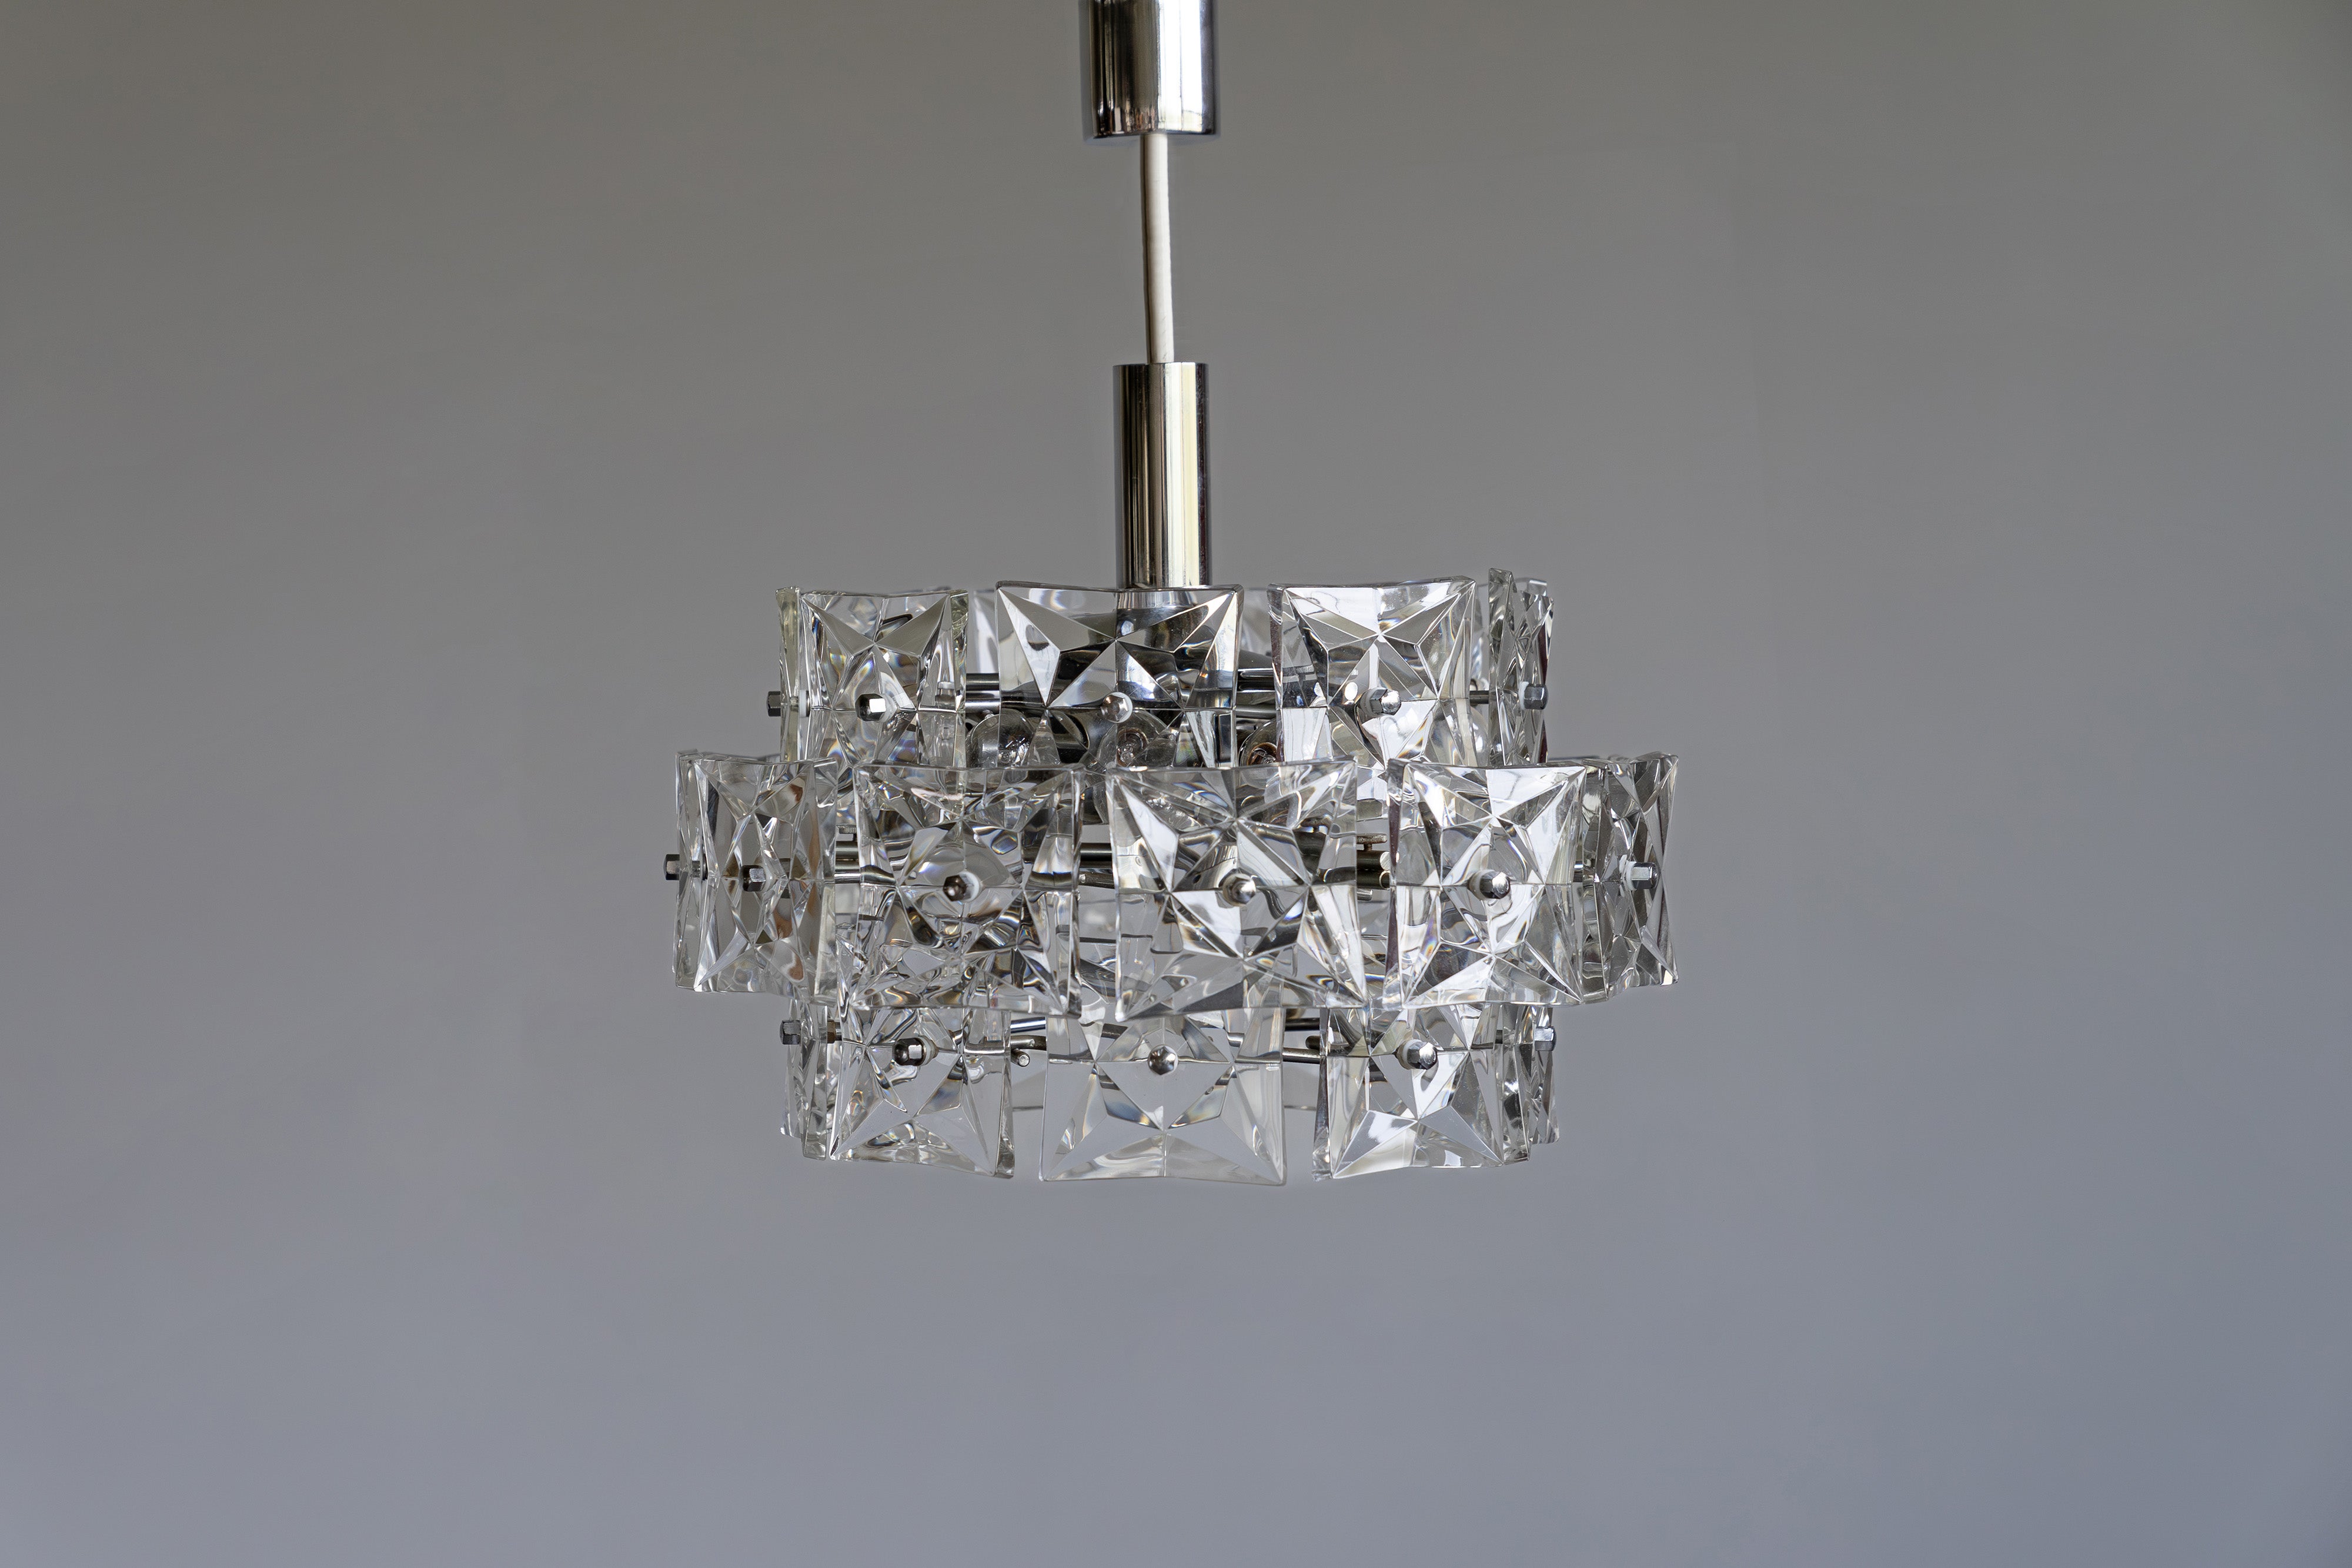 Kronleuchter von Kinkeldey aus verchromtem Stahl und Kristallglas. Mit ihren zwölf E14-Fassungen sorgt sie für ausreichend gleichmäßiges Licht.